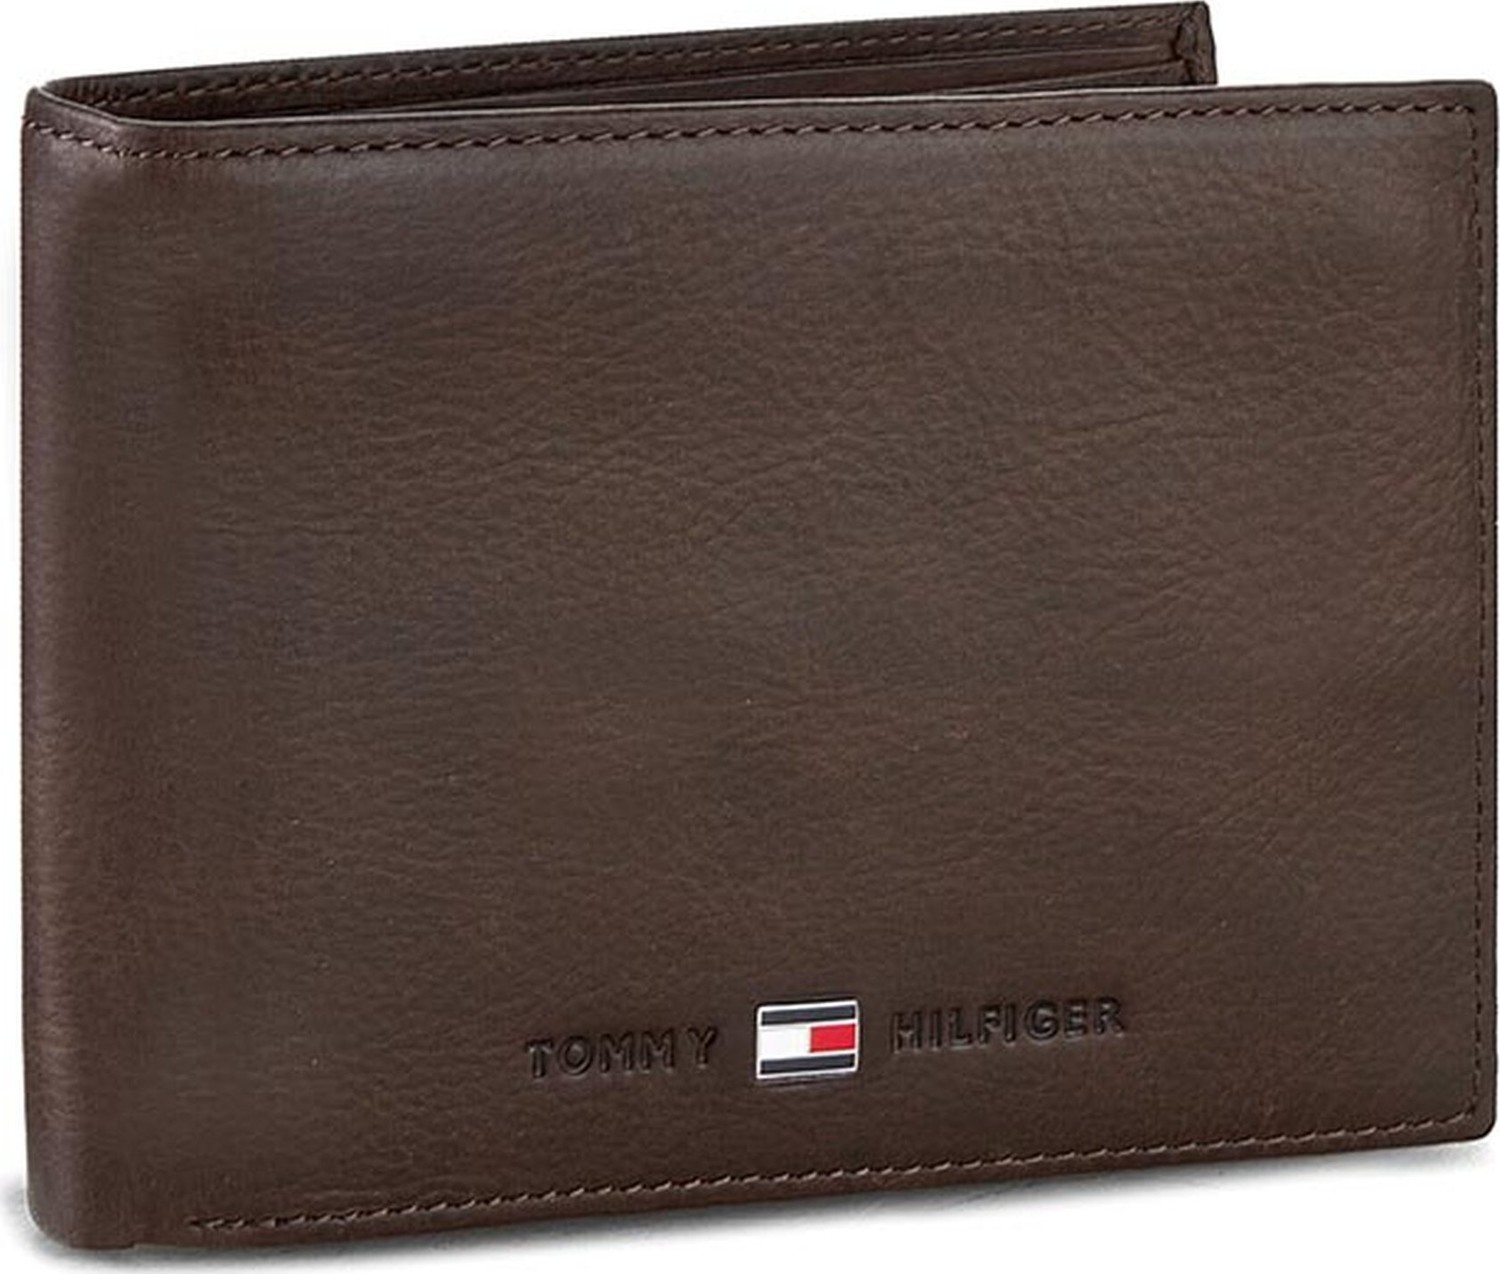 Velká pánská peněženka Tommy Hilfiger Johnson Cc Flap And Coin Pocket AM0AM00660/82566 041